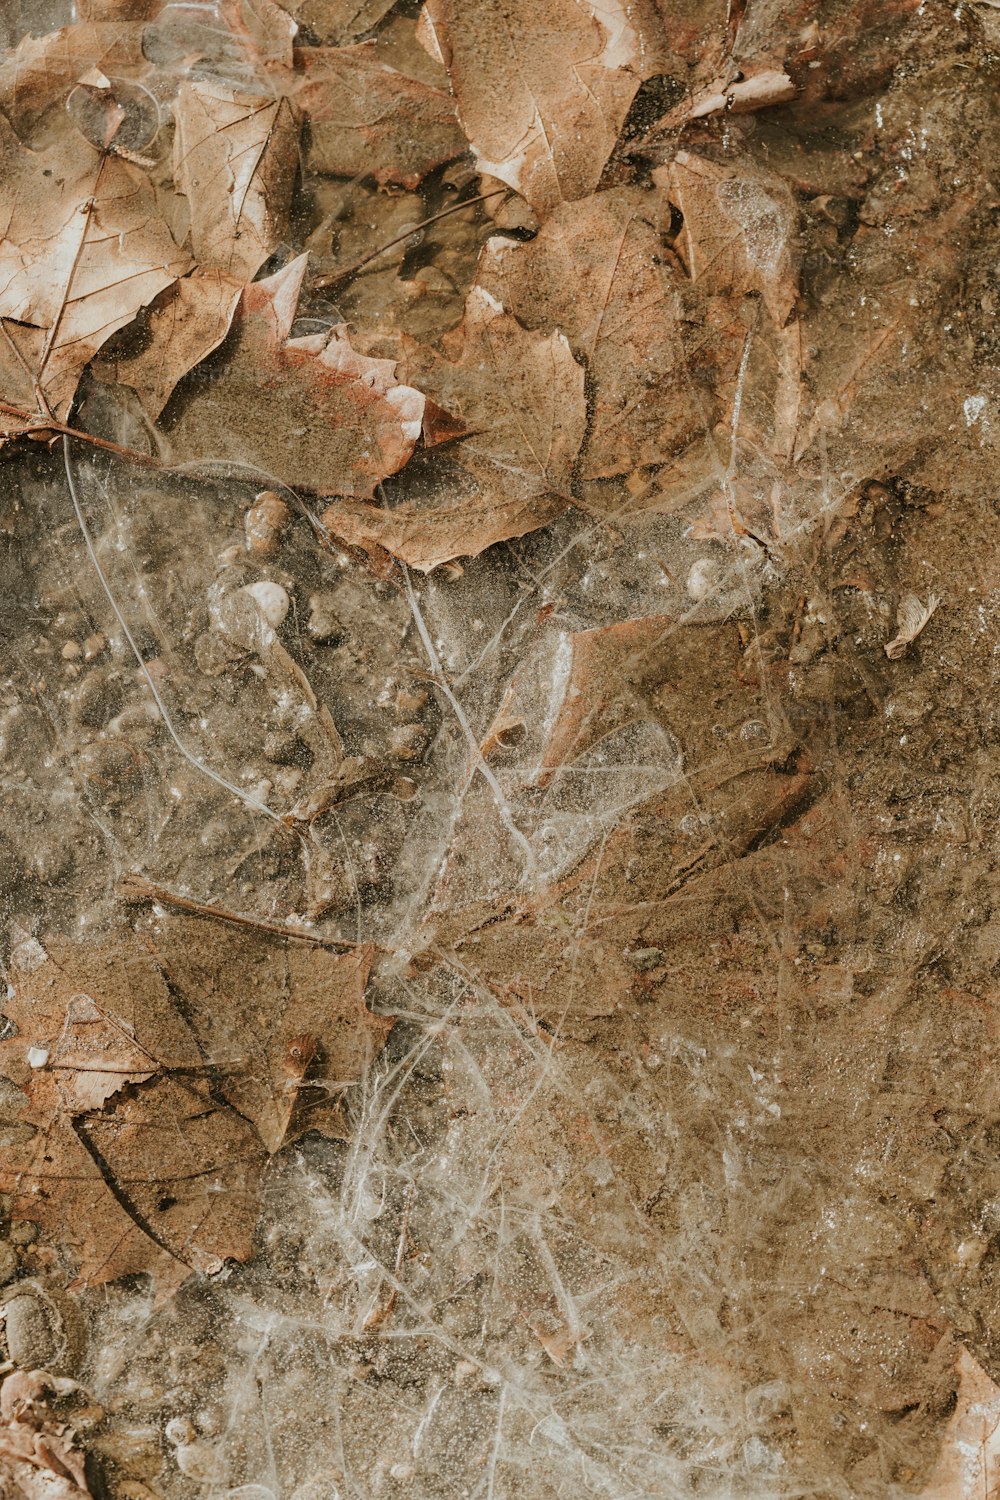 un primo piano di foglie e sporcizia sul terreno